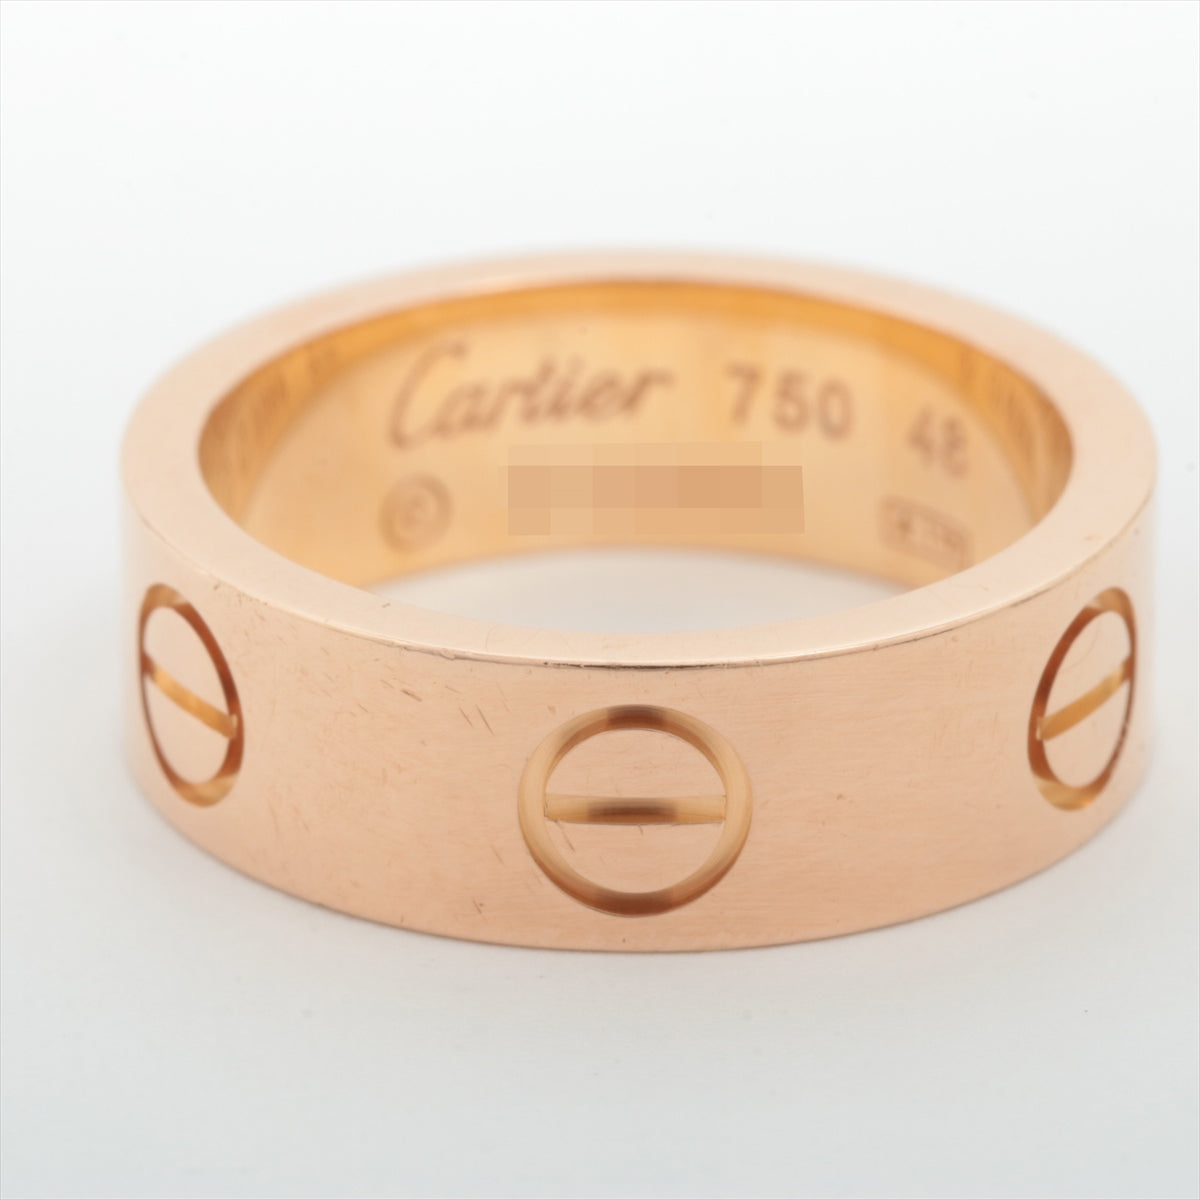 Cartier Love rings 750(PG) 6.7g 48